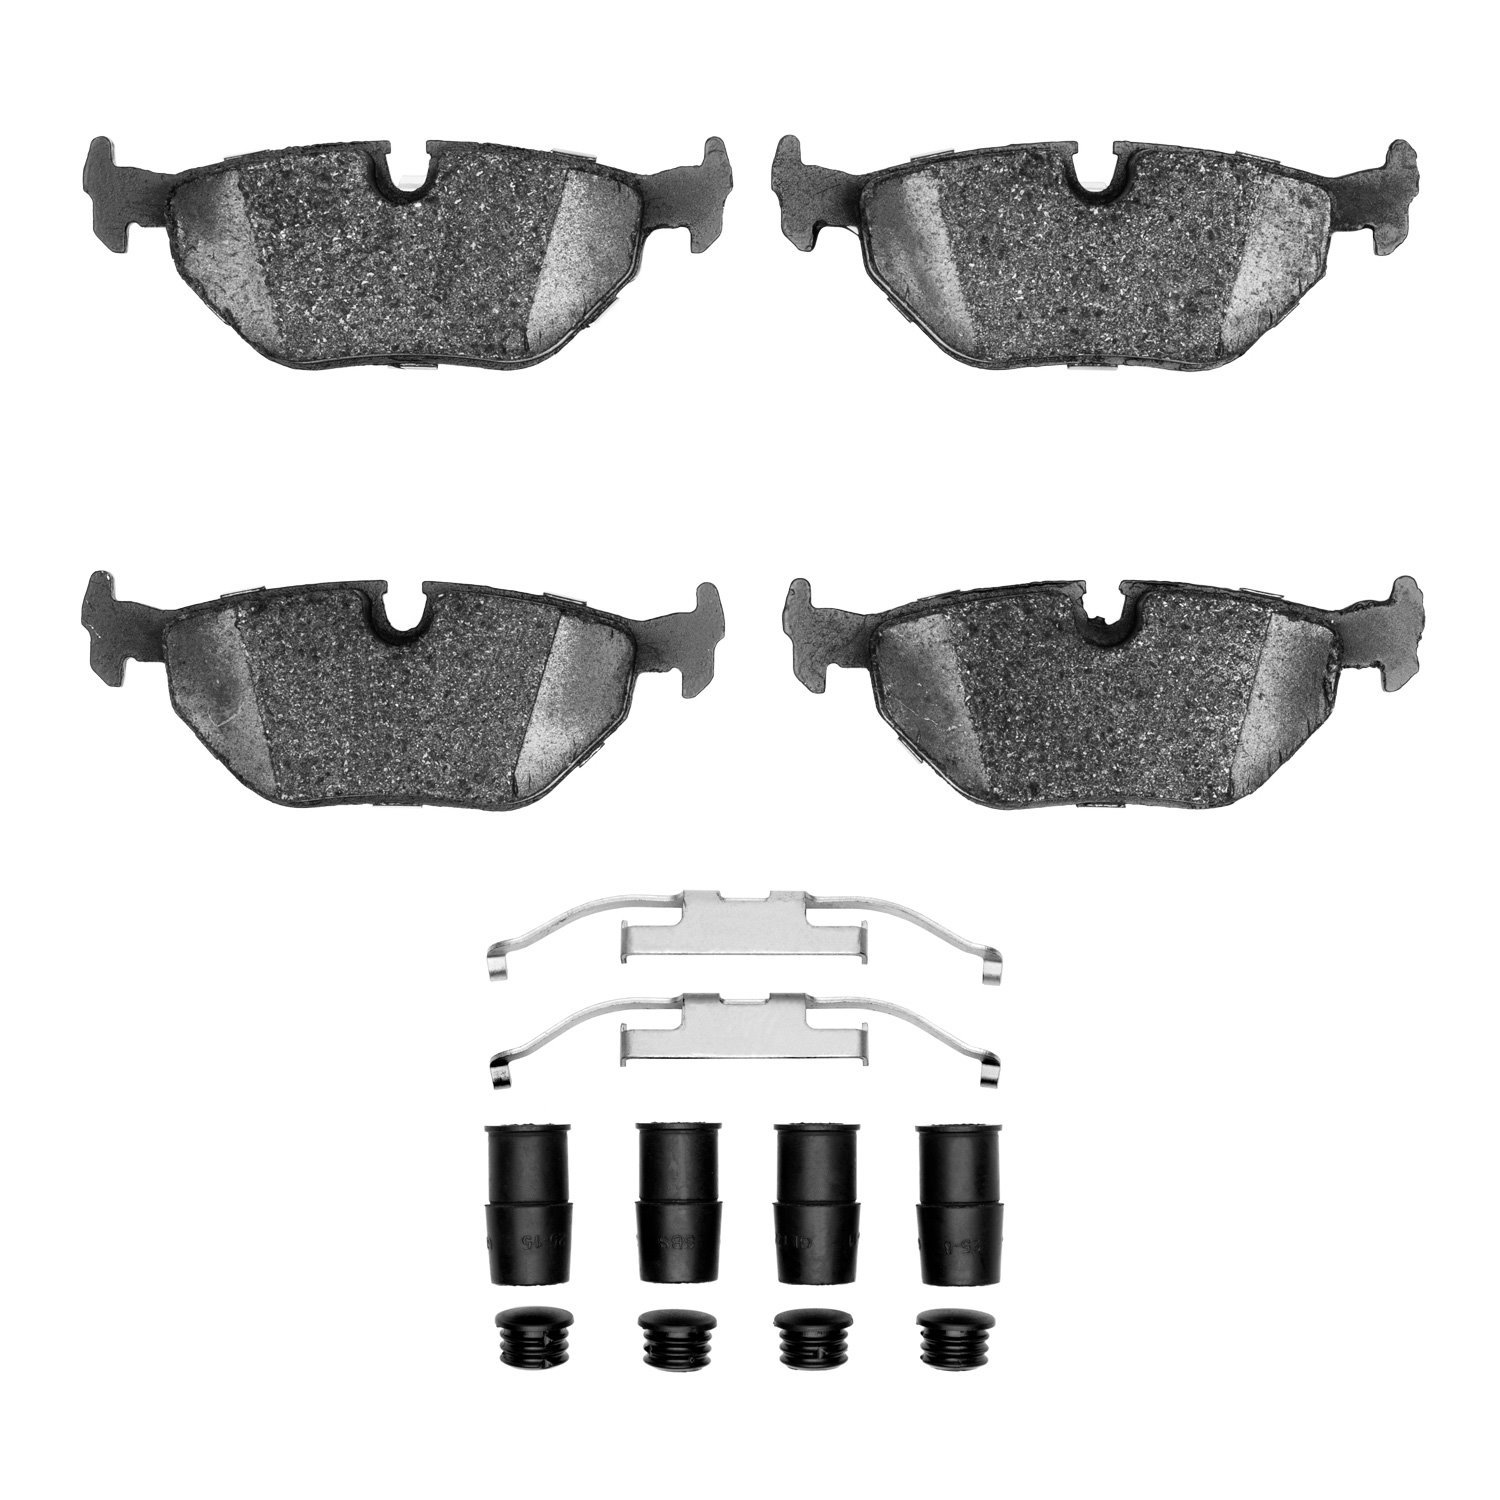 1310-0396-01 3000-Series Ceramic Brake Pads & Hardware Kit, 1987-2002 BMW, Position: Rear